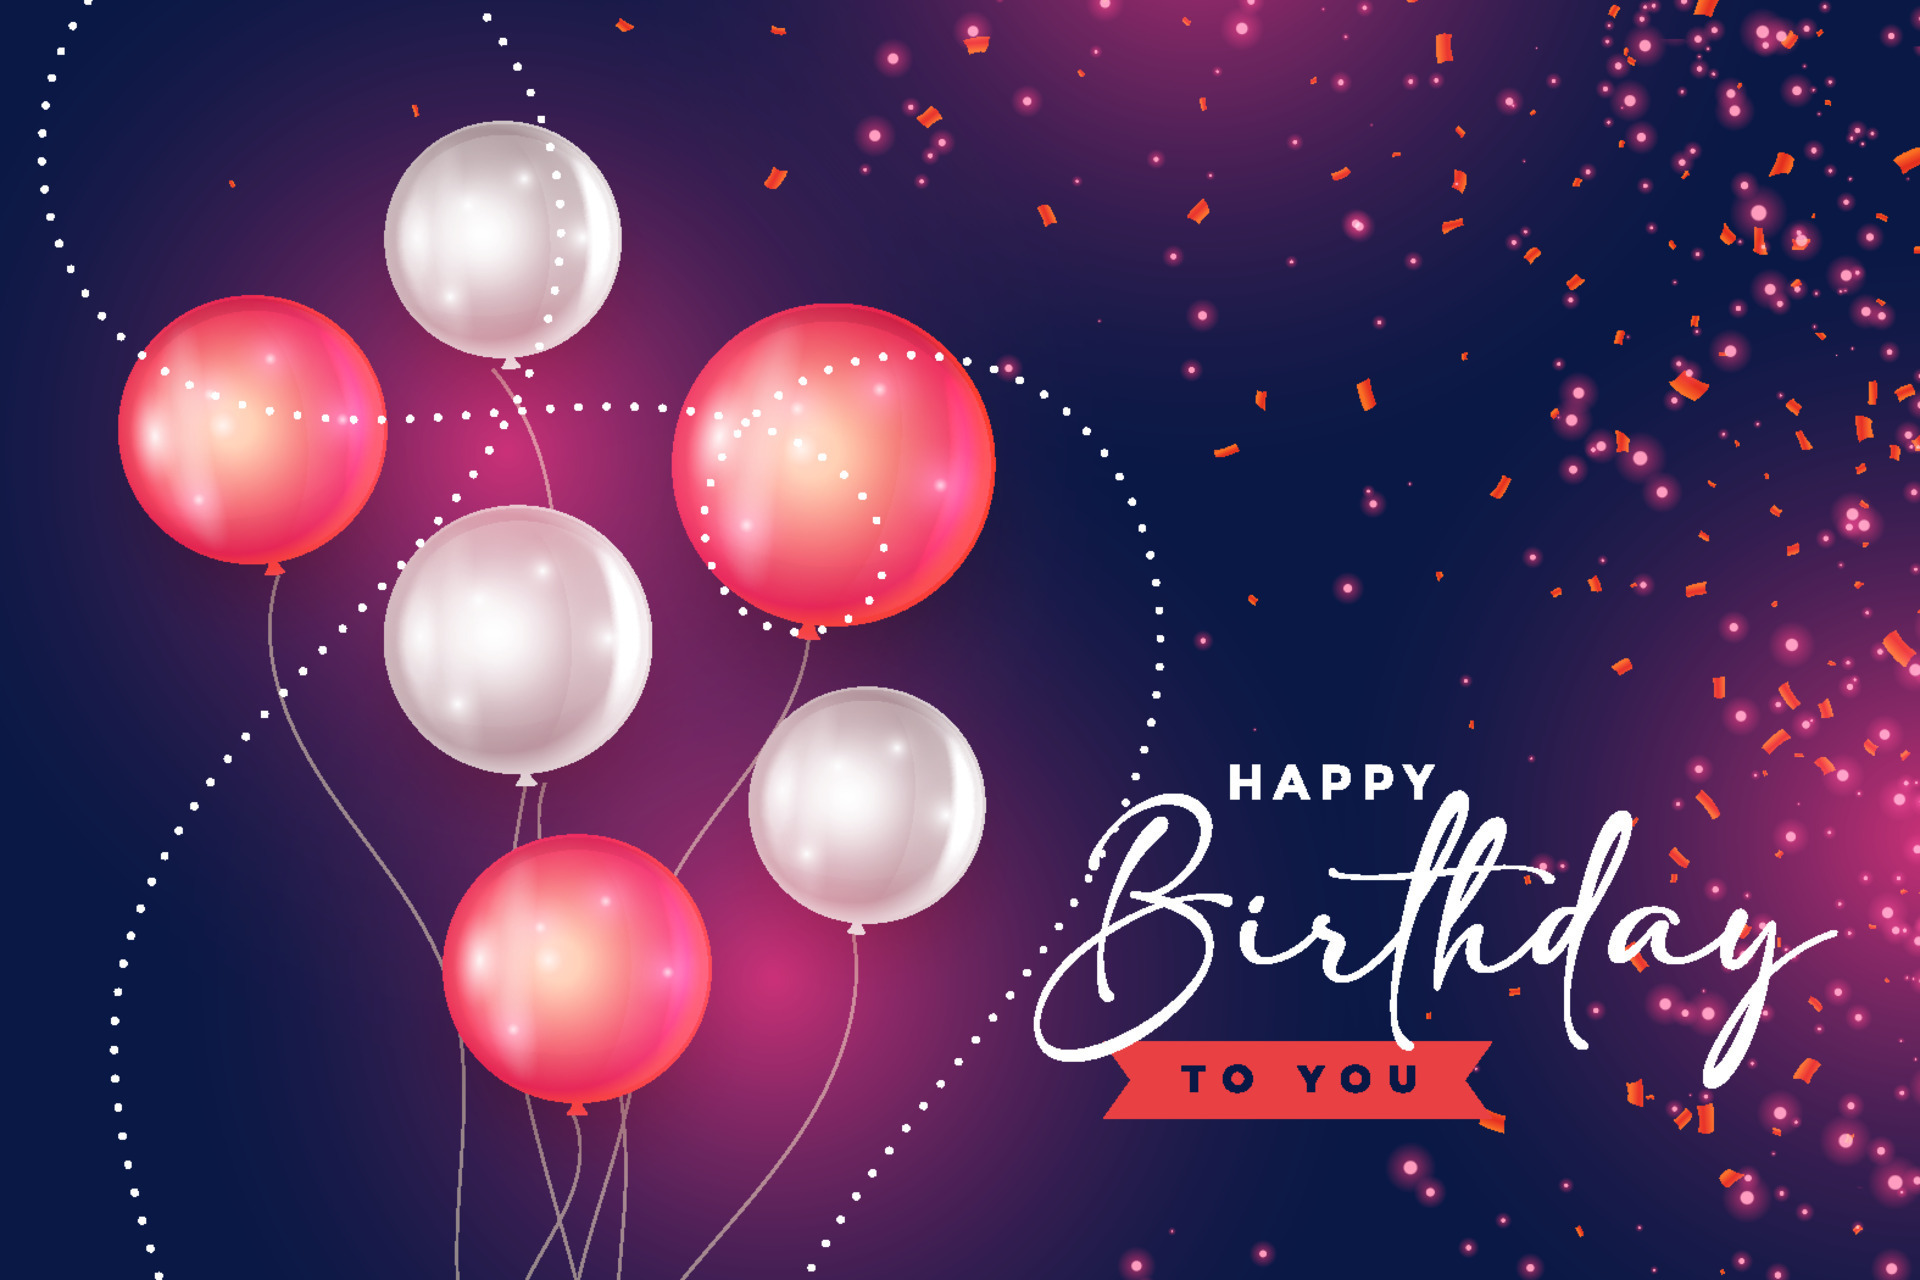 Không thể thiếu những chiếc bóng bay rực rỡ và đầy màu sắc trong bất cứ buổi tiệc sinh nhật nào. Hãy cùng đến với hình ảnh Birthday Balloons để chiêm ngưỡng những chiếc bóng bay tuyệt đẹp và cùng điểm tô cho bữa tiệc sinh nhật của bạn nào!